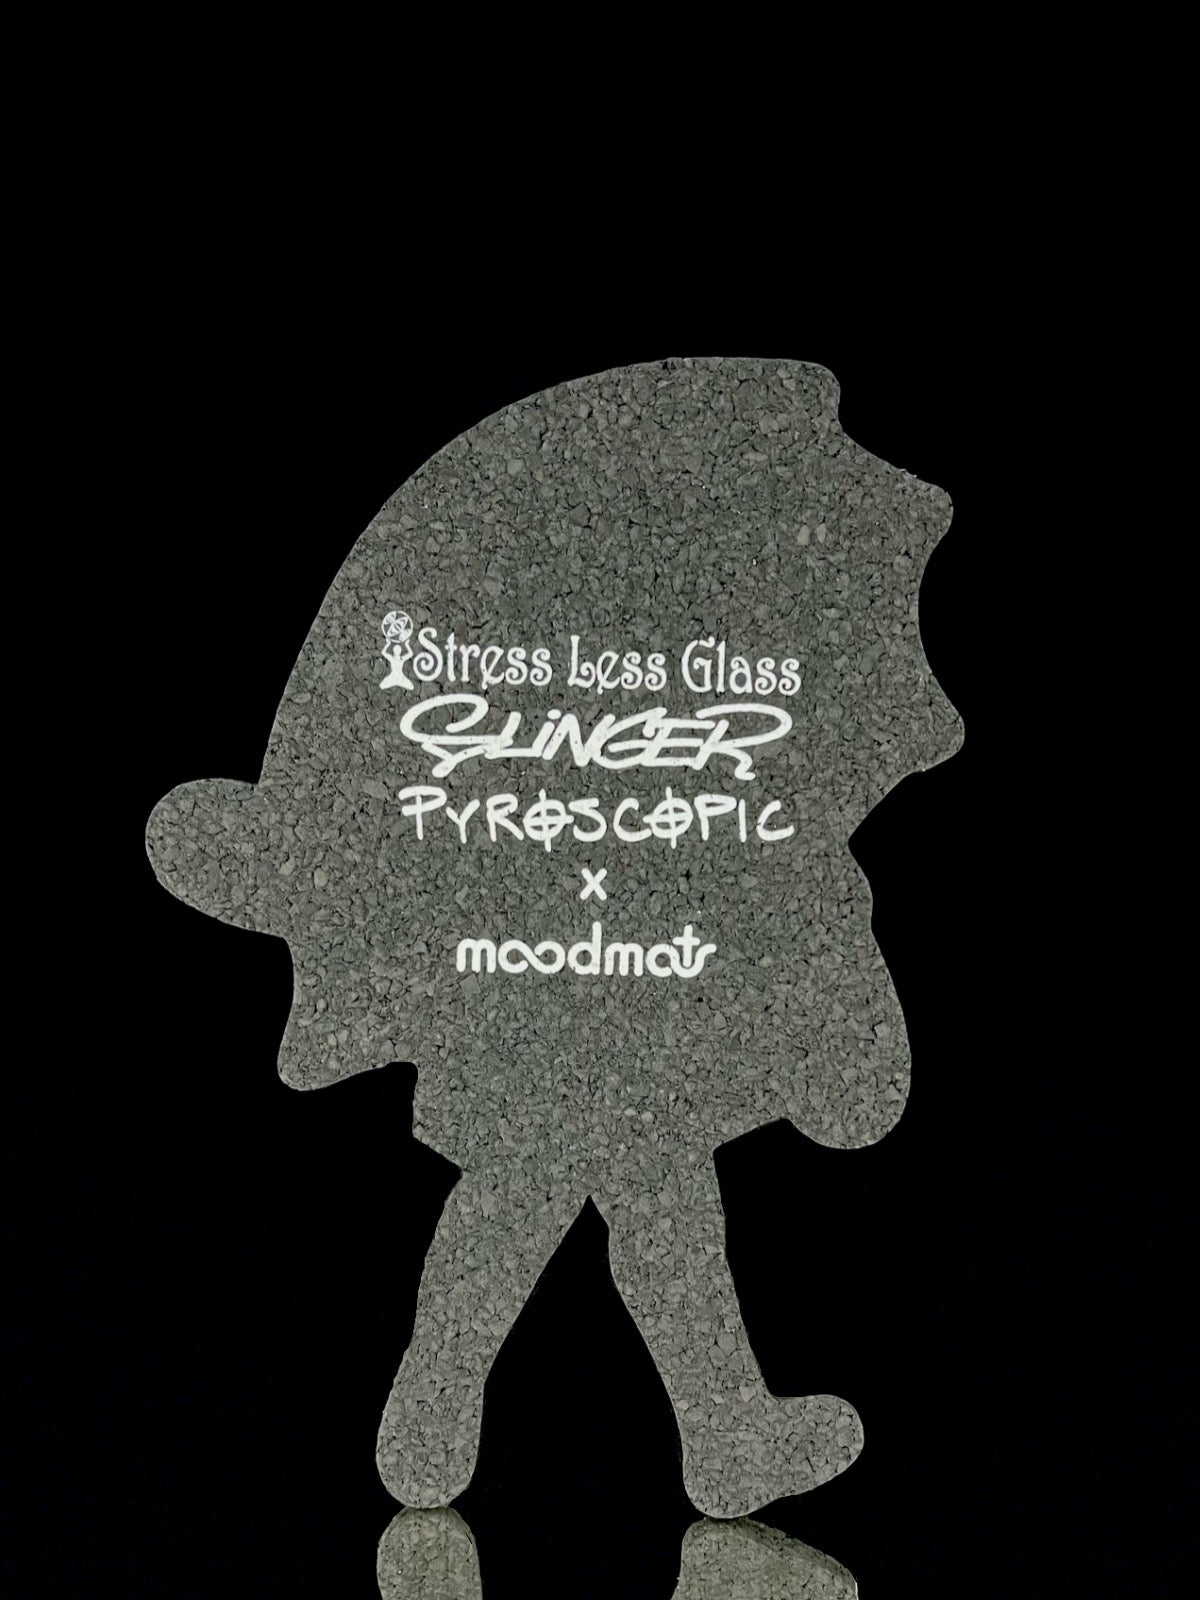 “Fume Shroom Girl” moodmat by Slinger Apparel, Pyroscopic, & Stressless Glass